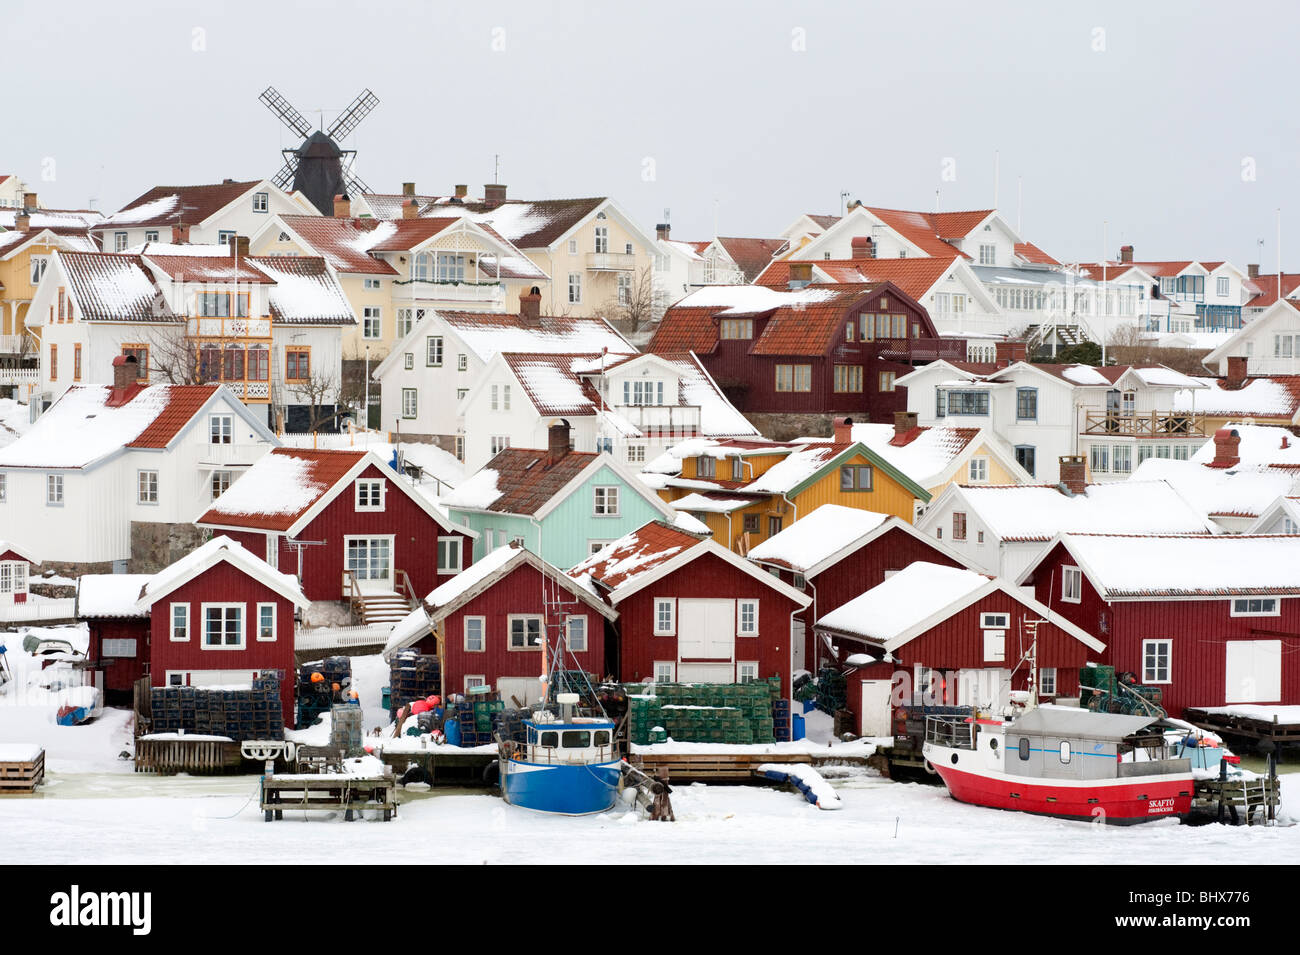 Village de Fiskebackskil pendant hiver froid sur la côte en 2010, Bohuslan, Sweden Suède Banque D'Images